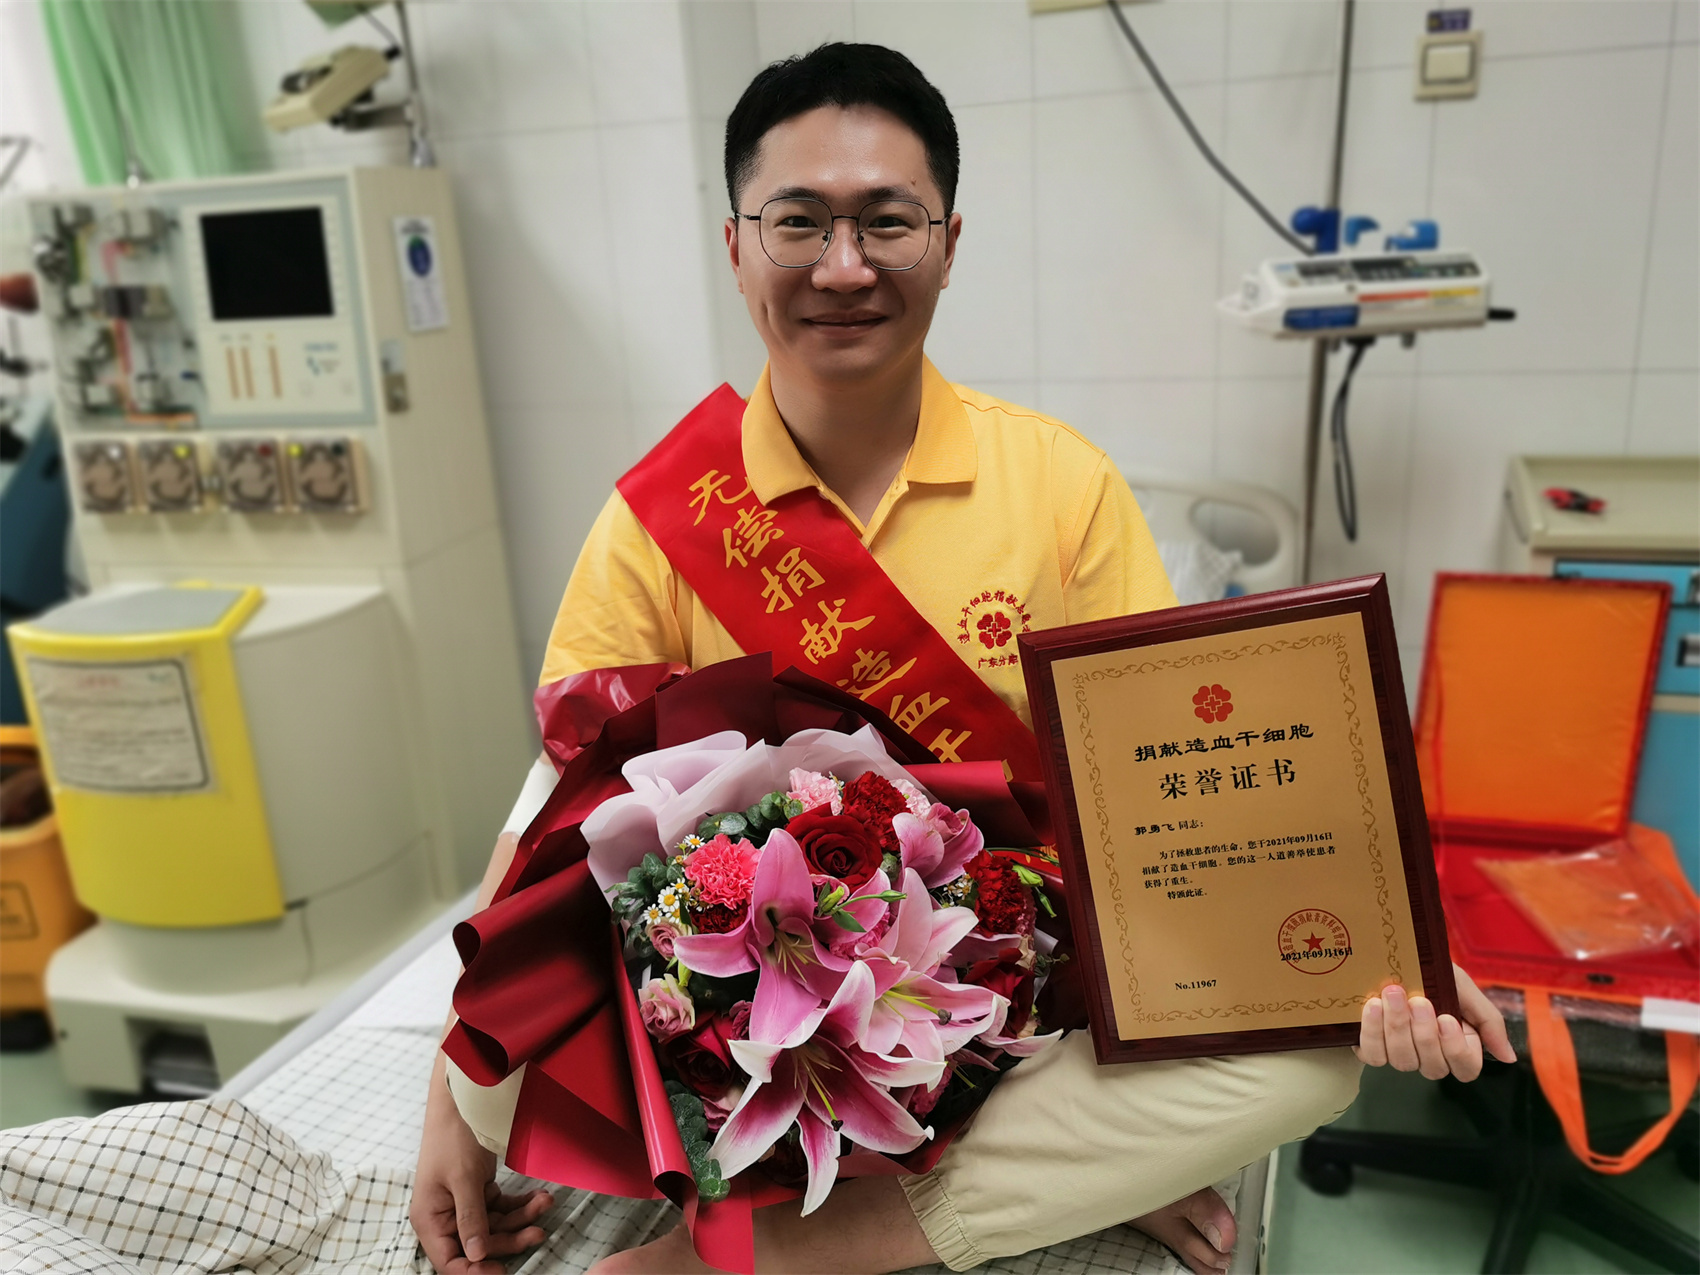 中国造血干细胞捐献者资料库广东省管理中心向郭勇飞授予“捐献造血干细胞”荣誉证书。（来源：受访者供图）